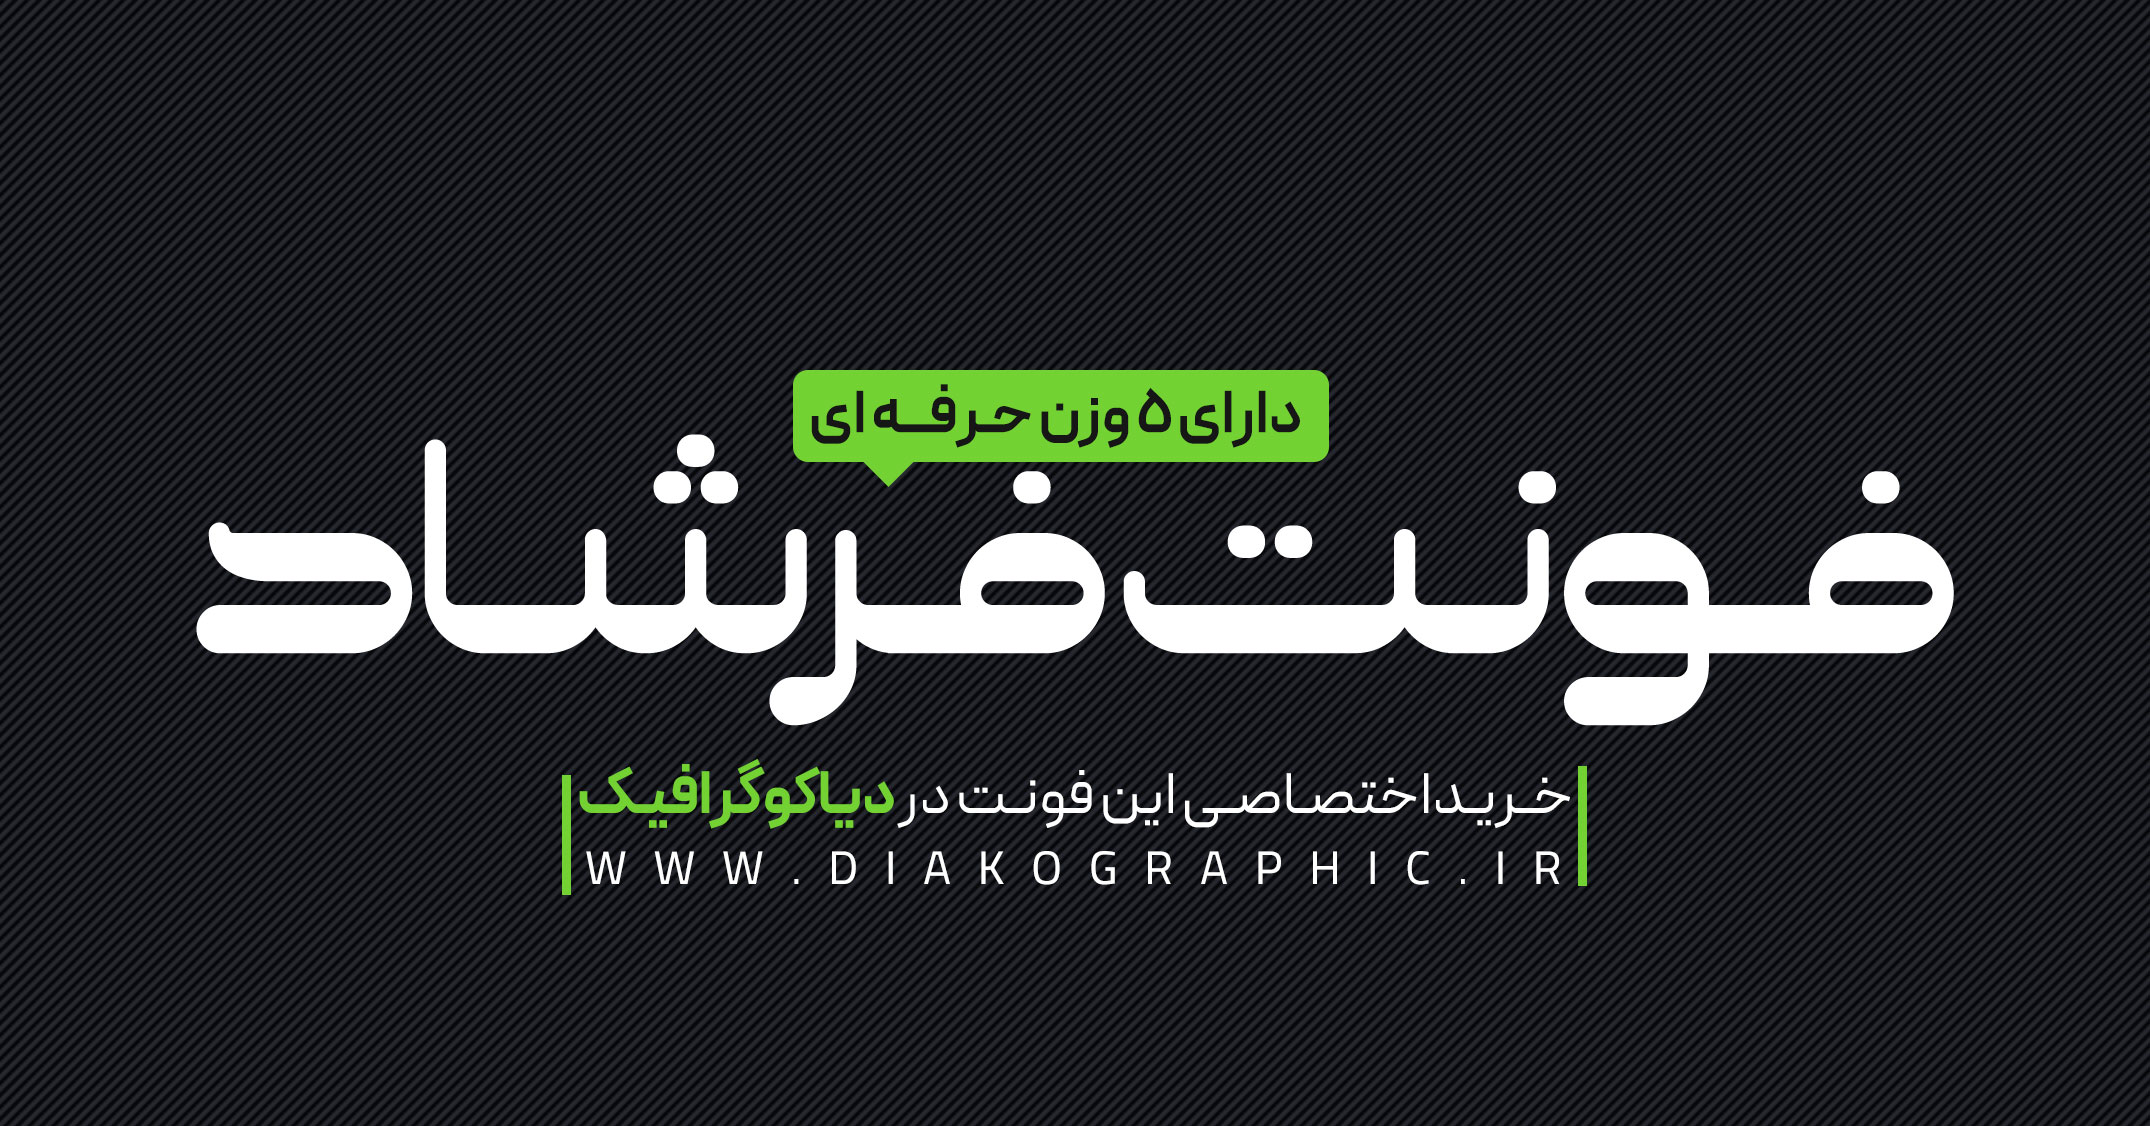 دانلود فونت تایپوگرافی فارسی فرشاد